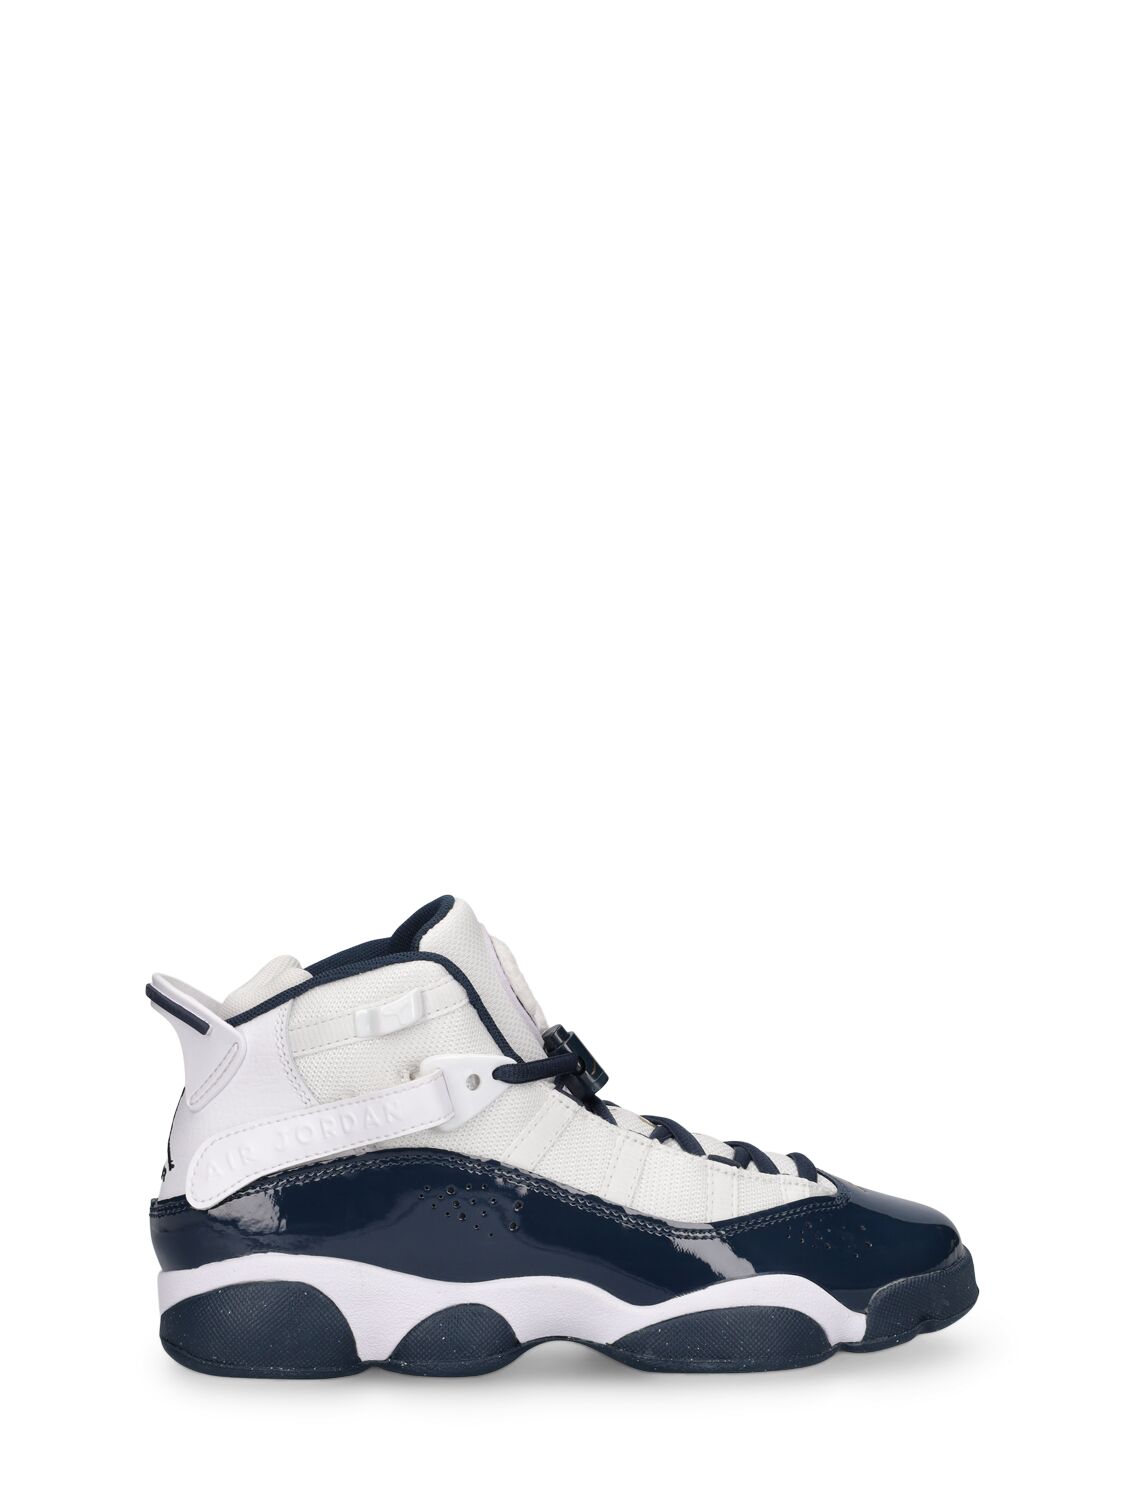 Image of Jordan 6 Rings Sneakers